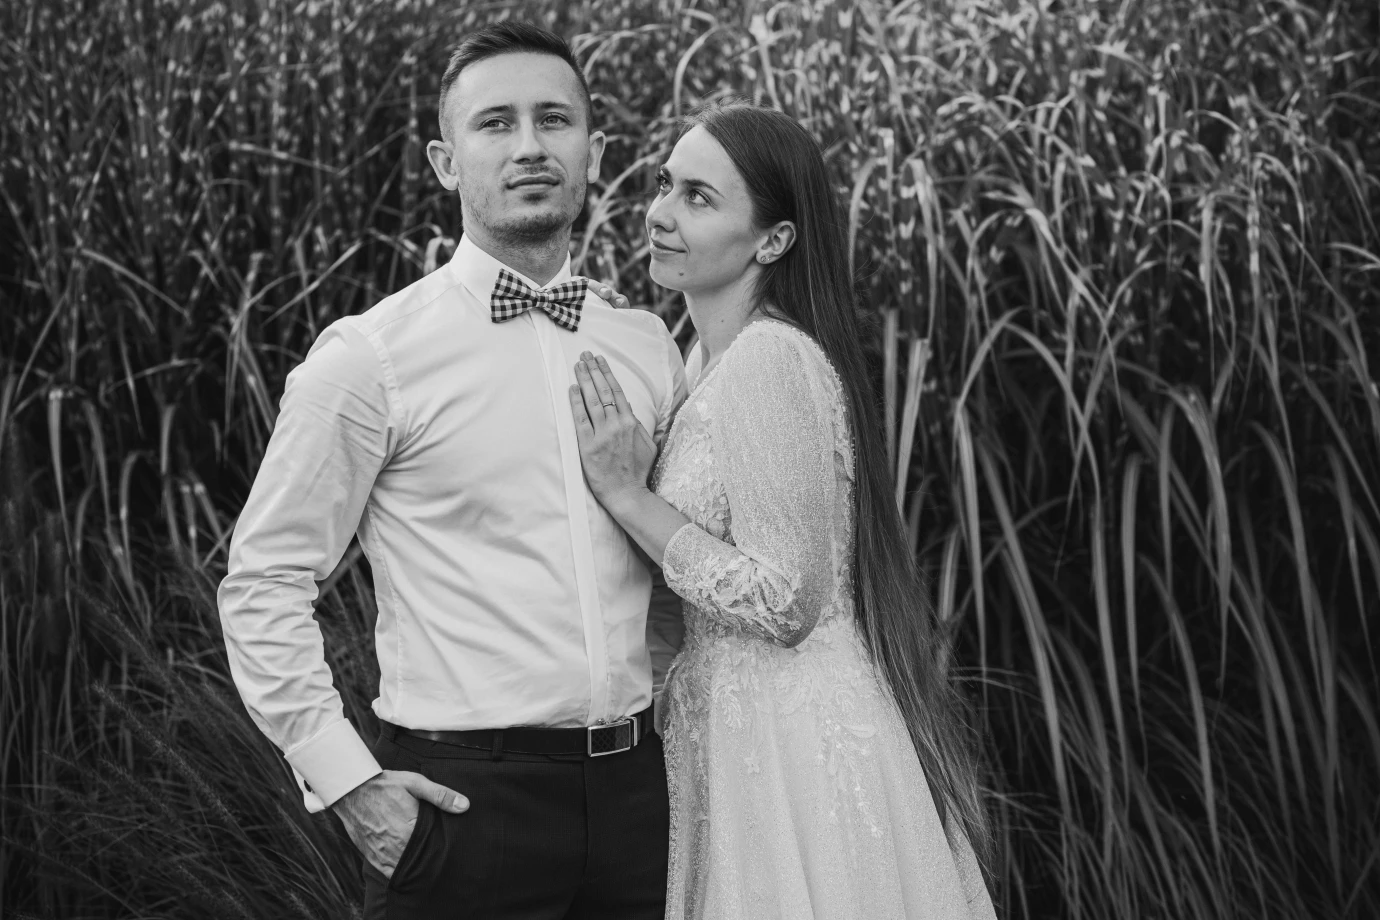 zdjęcia andrychow fotograf fotografia-markowscy portfolio zdjecia slubne inspiracje wesele plener slubny sesja slubna